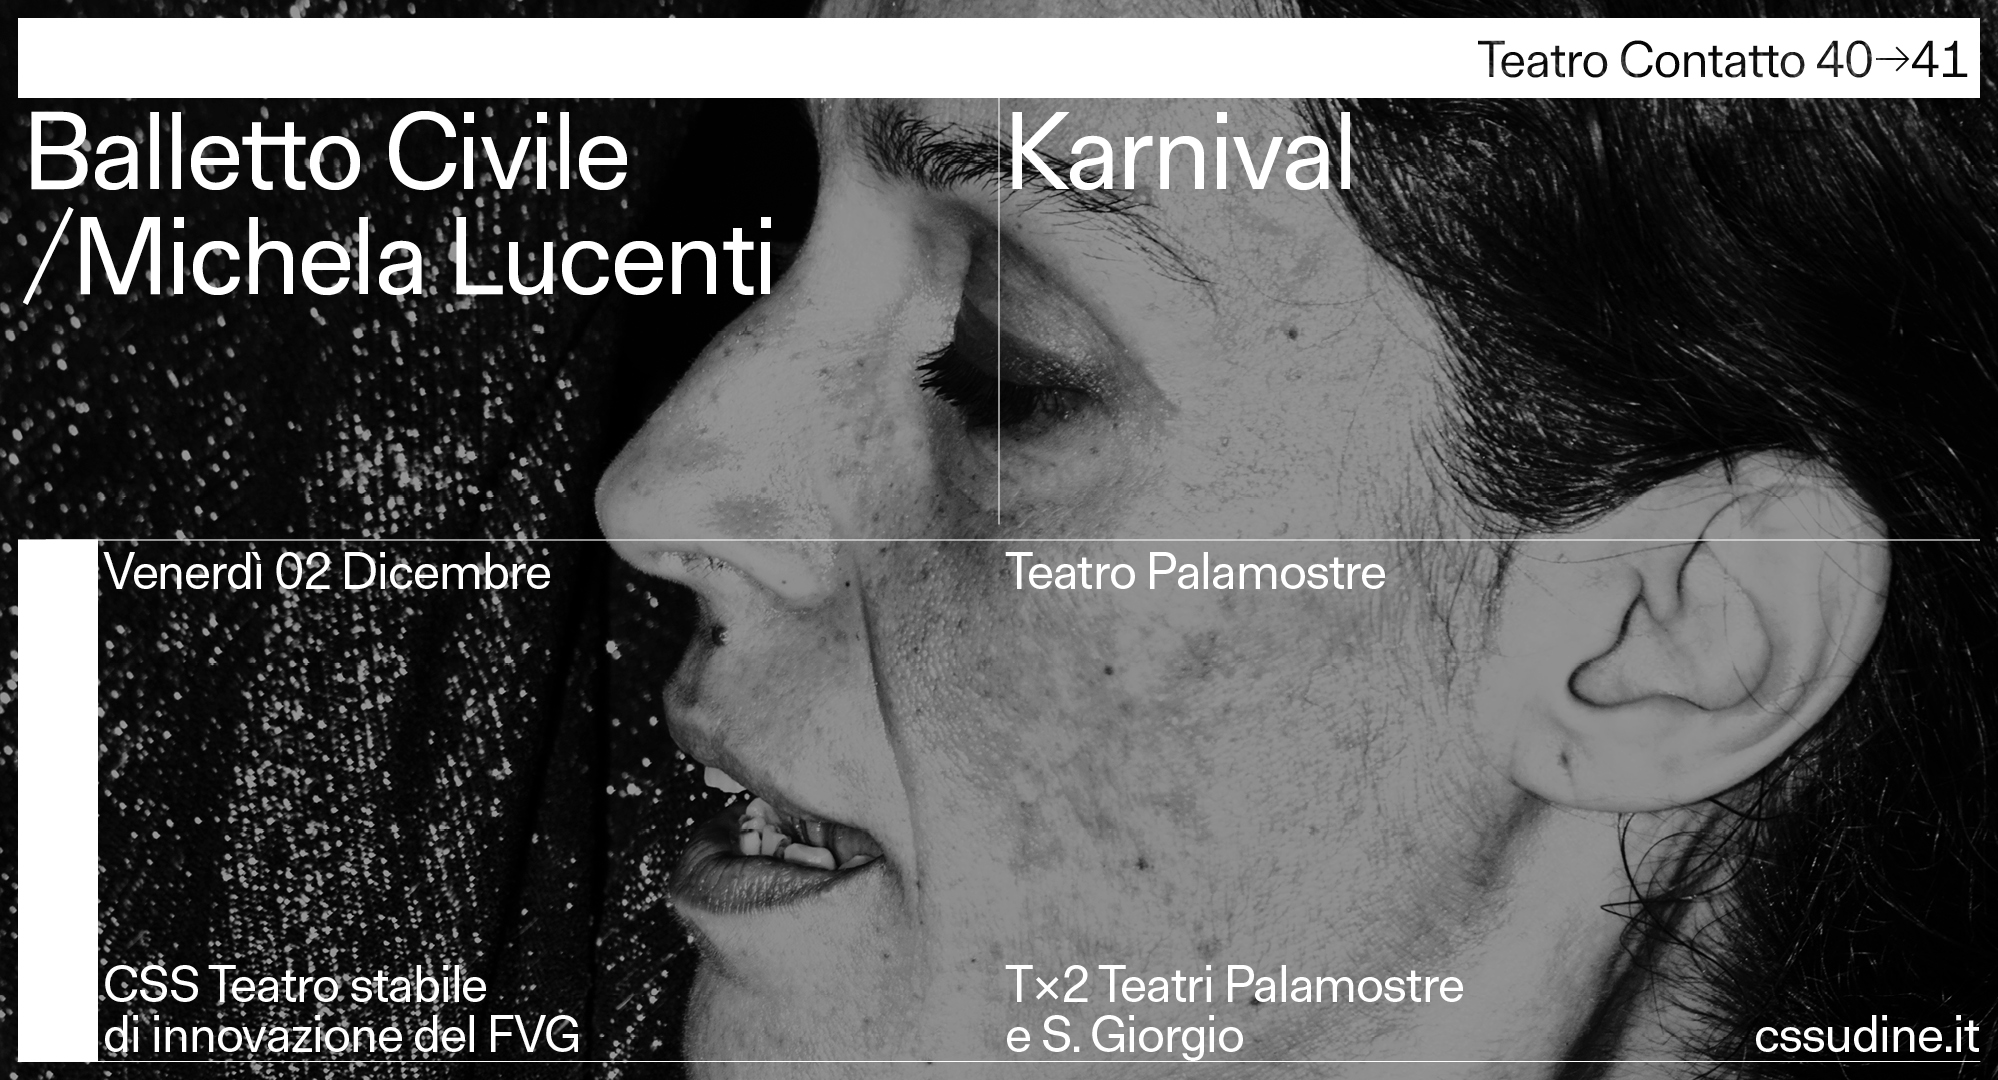 Balletto Civile / Michela Lucenti con Karnival a Teatro Contatto 40